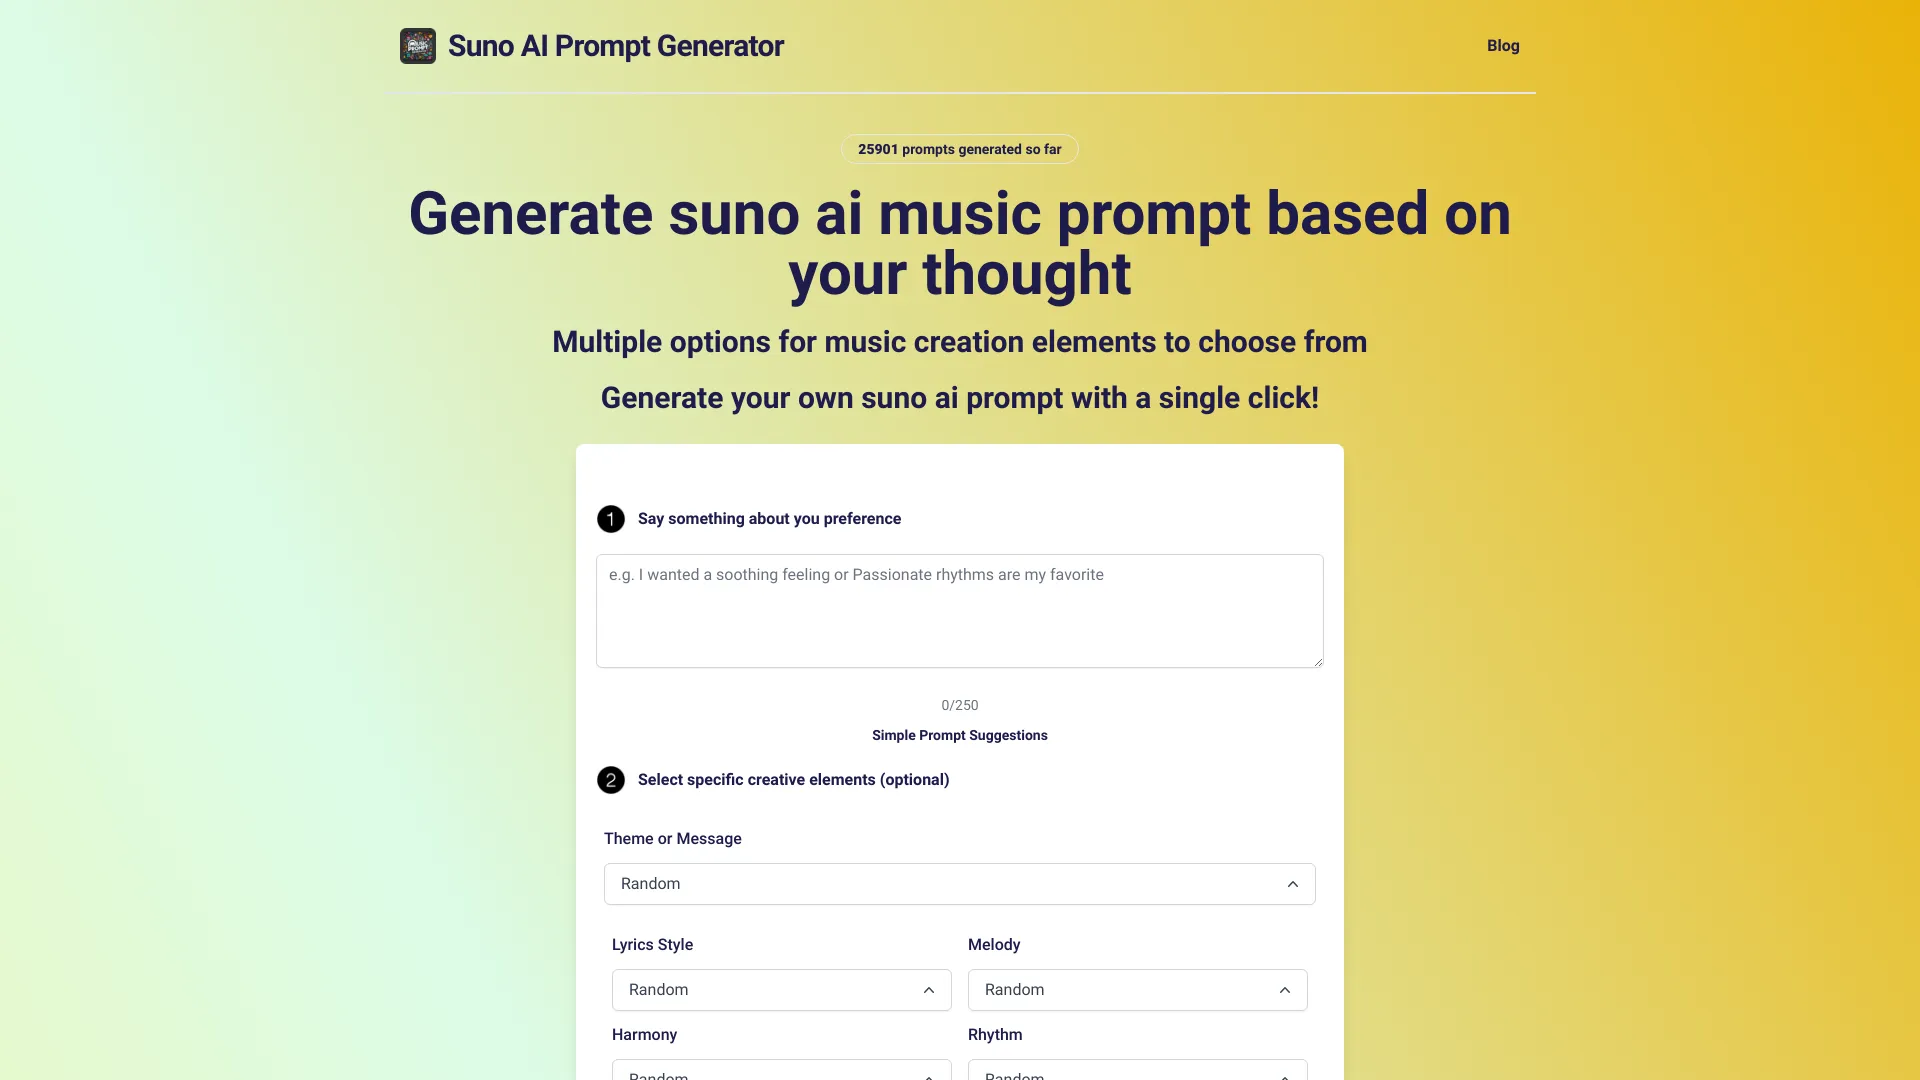 Music Prompt Generator